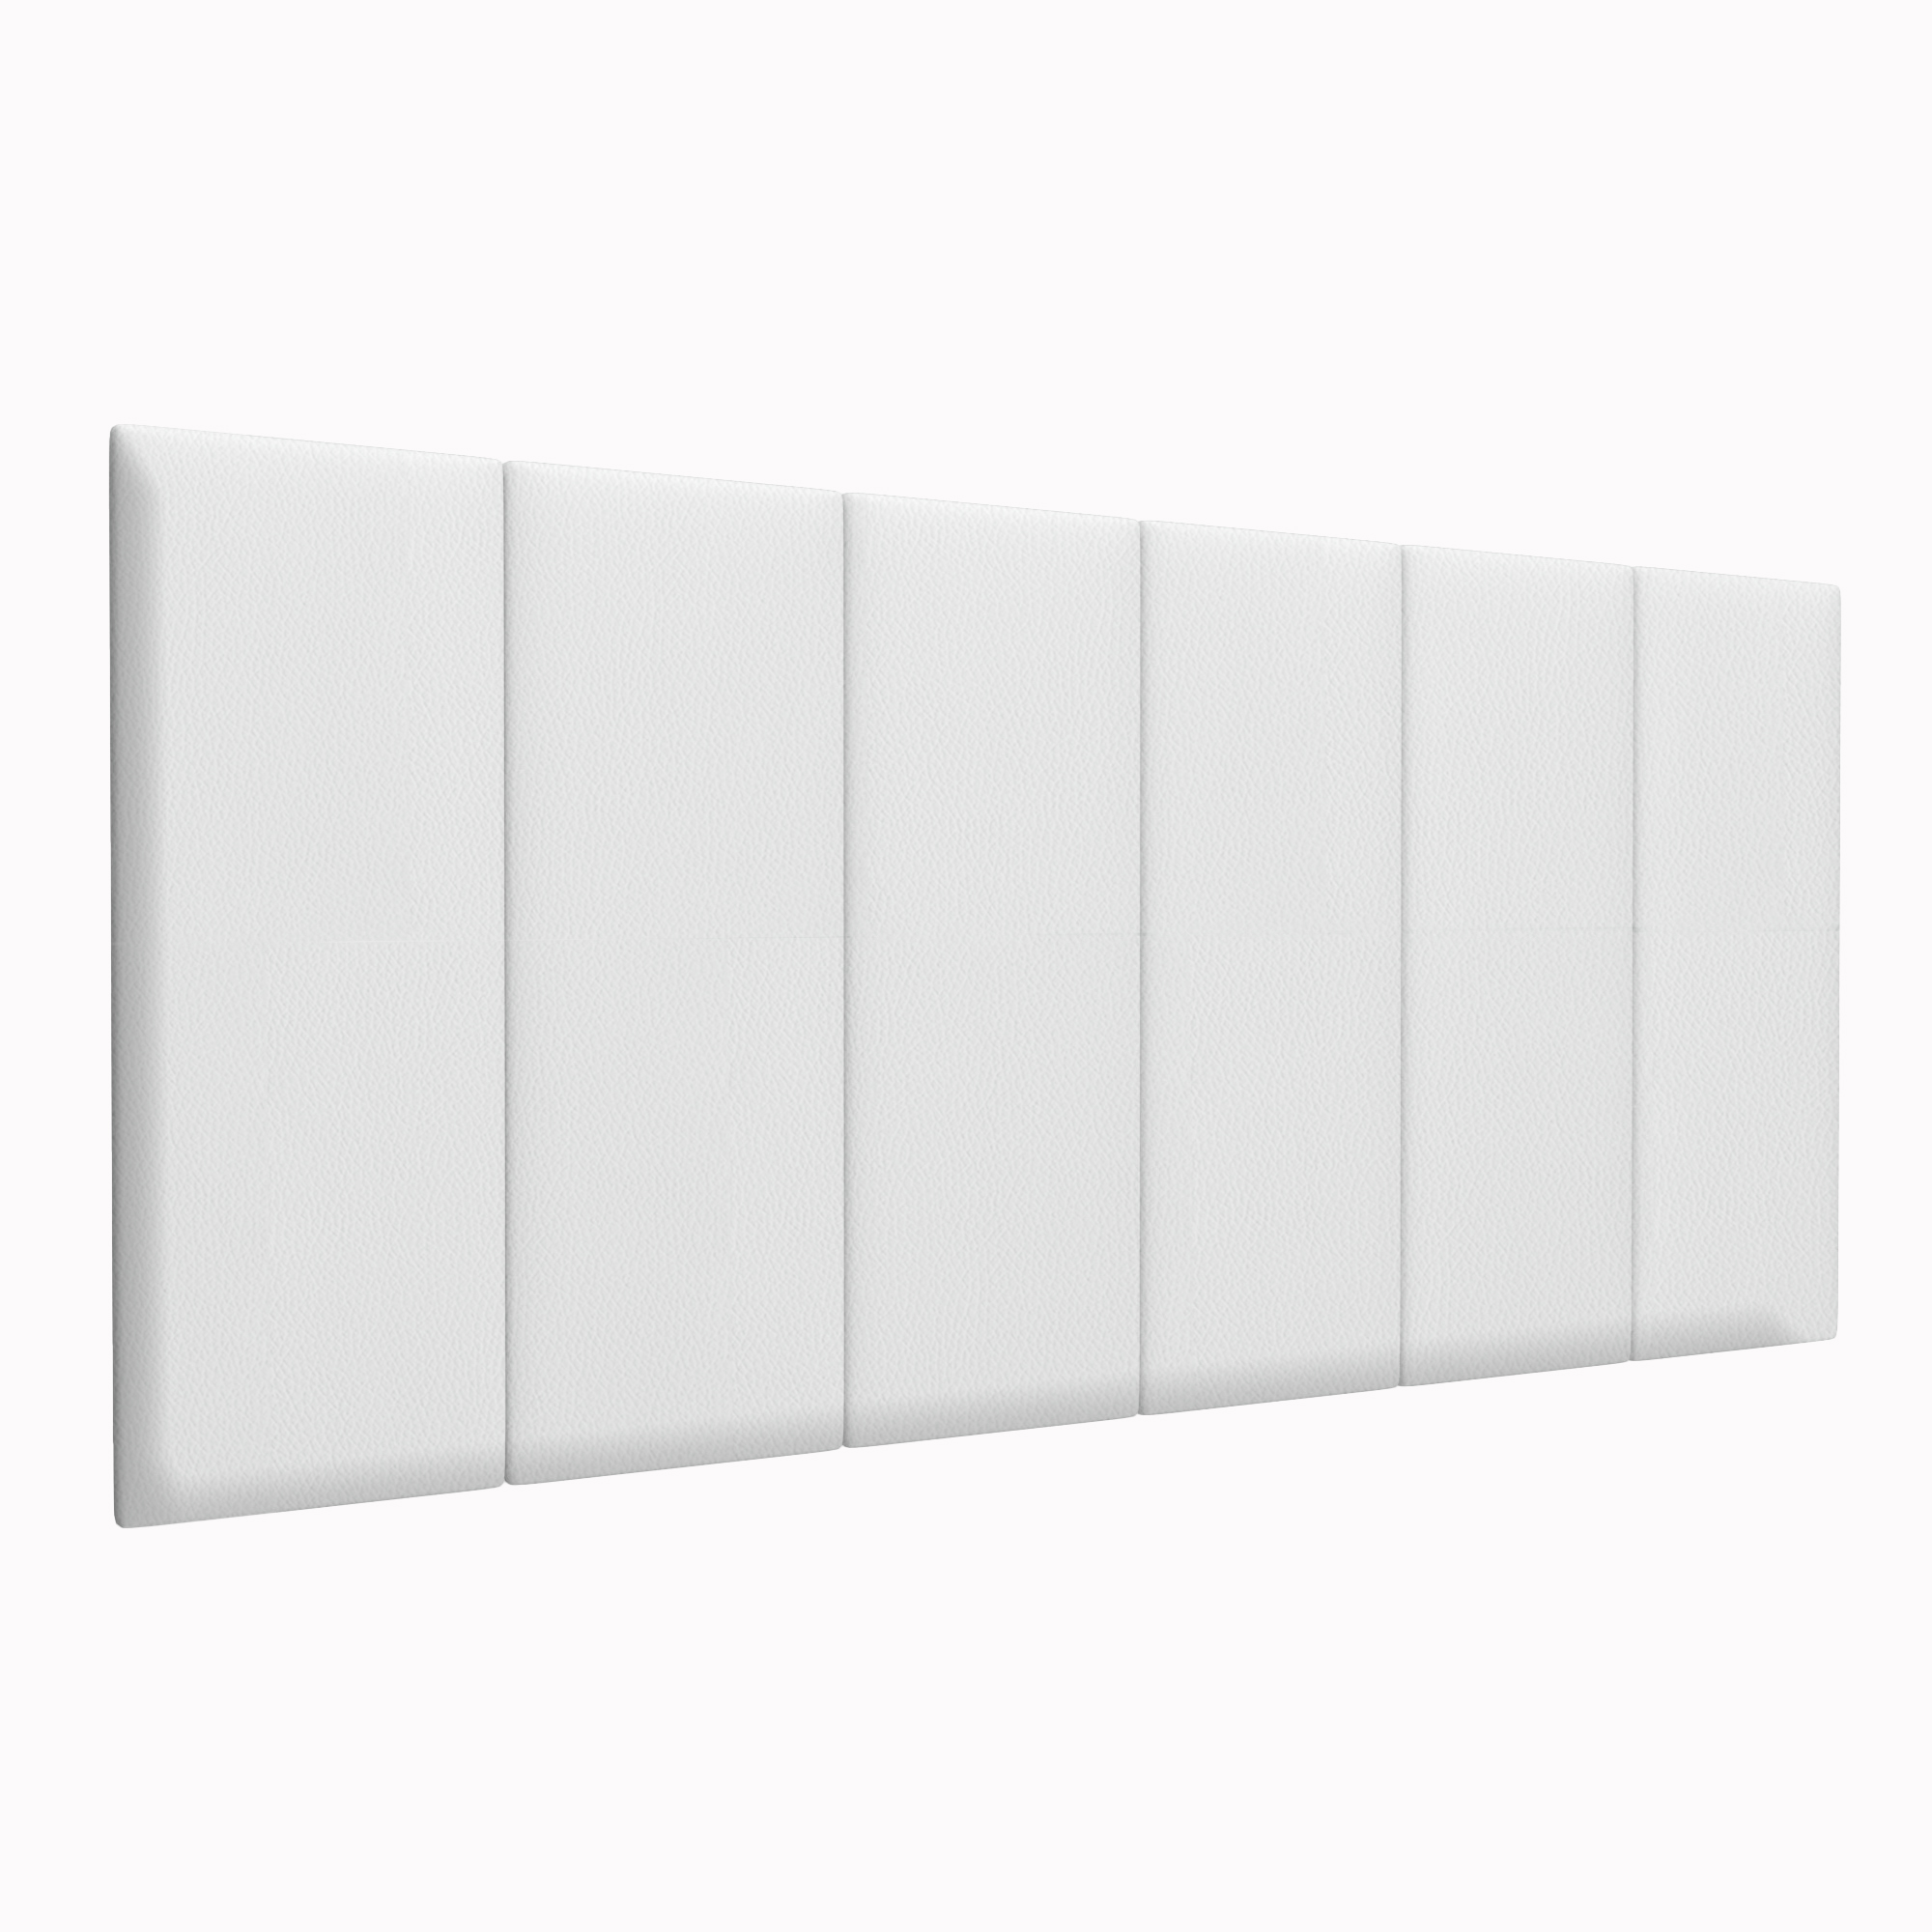 Шумо звукоизоляционные мягкие панели Eco Leather White 30х80 см 1 шт.